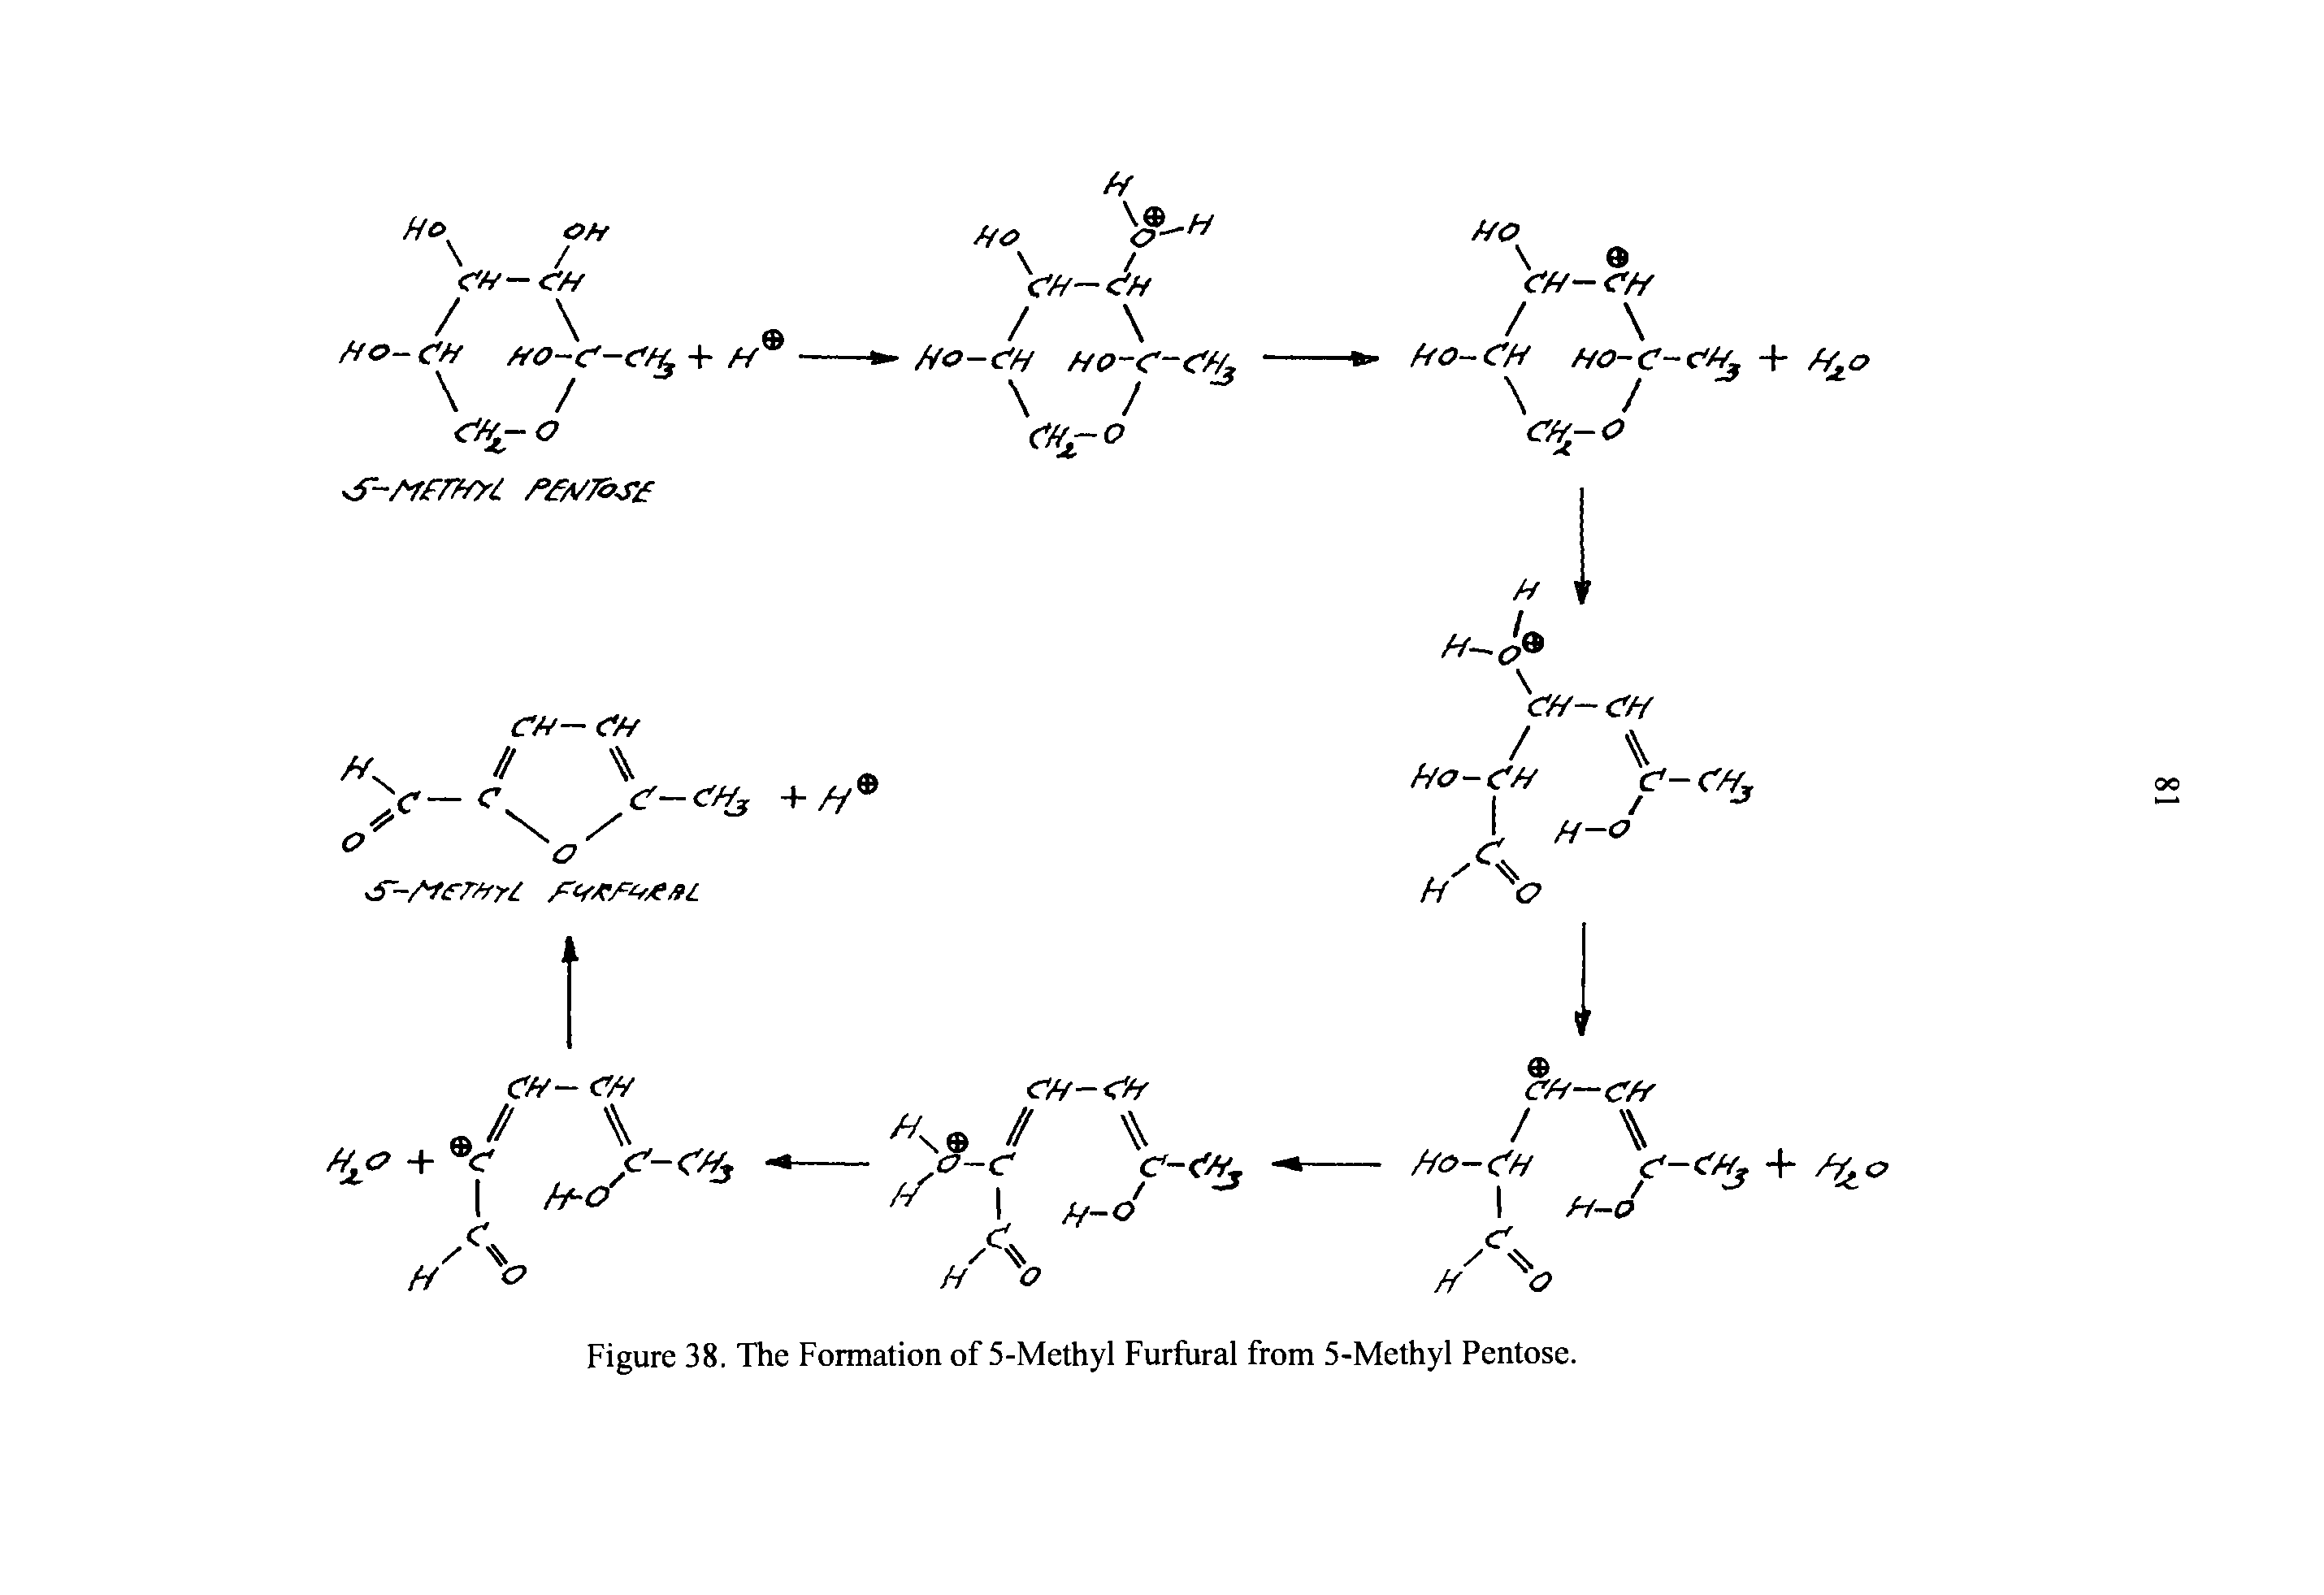 Figure 38. The Formation of 5-Methyl Furfural from 5-Methyl Pentose.